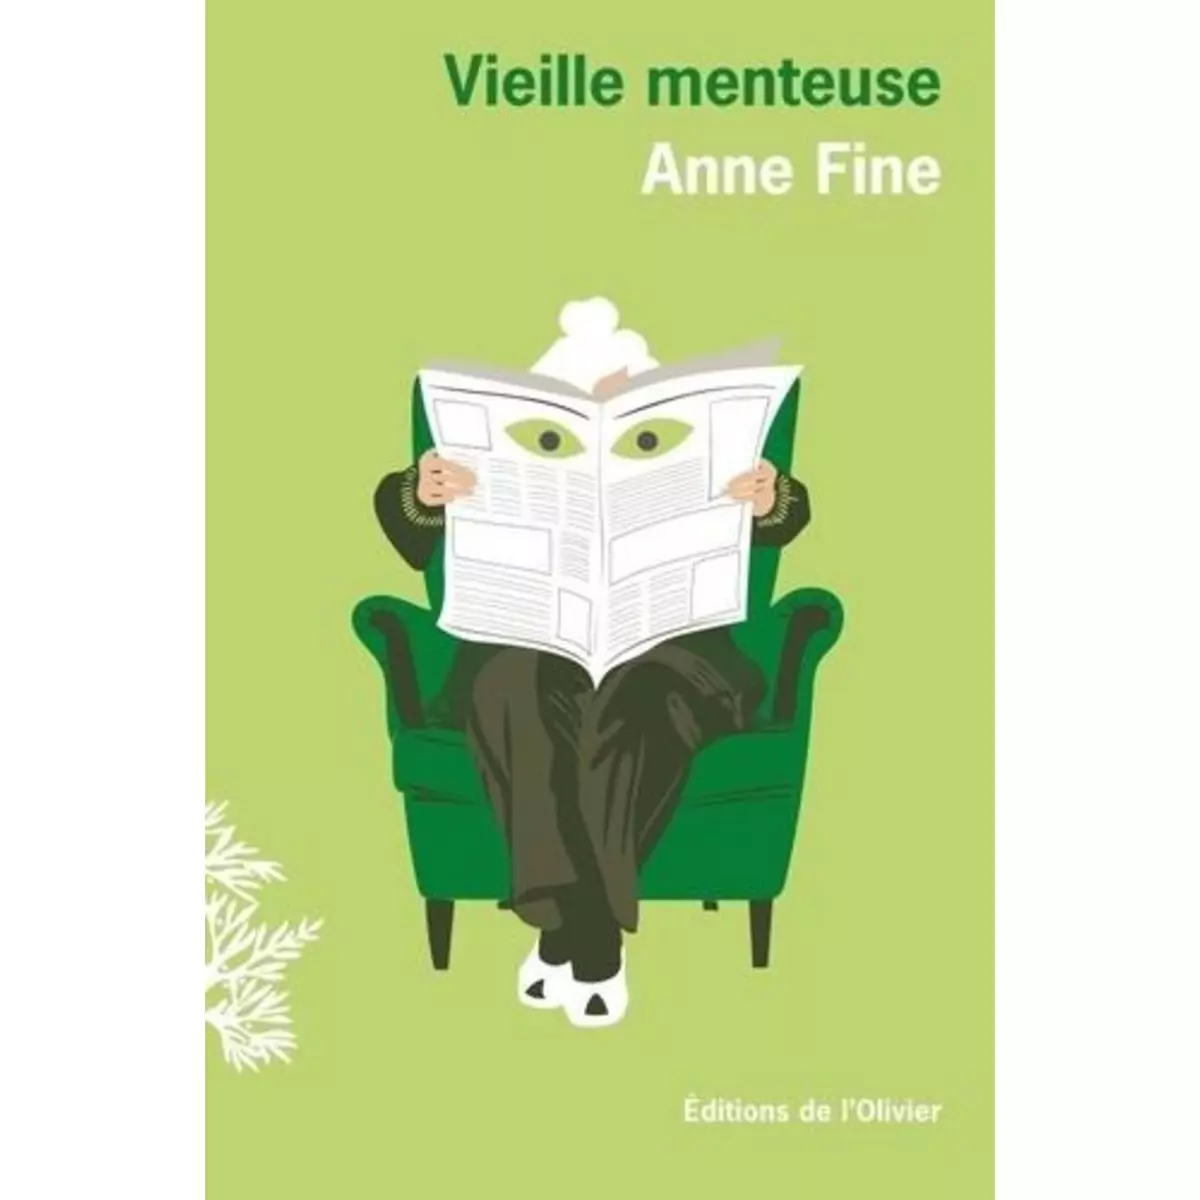  VIEILLE MENTEUSE, Fine Anne